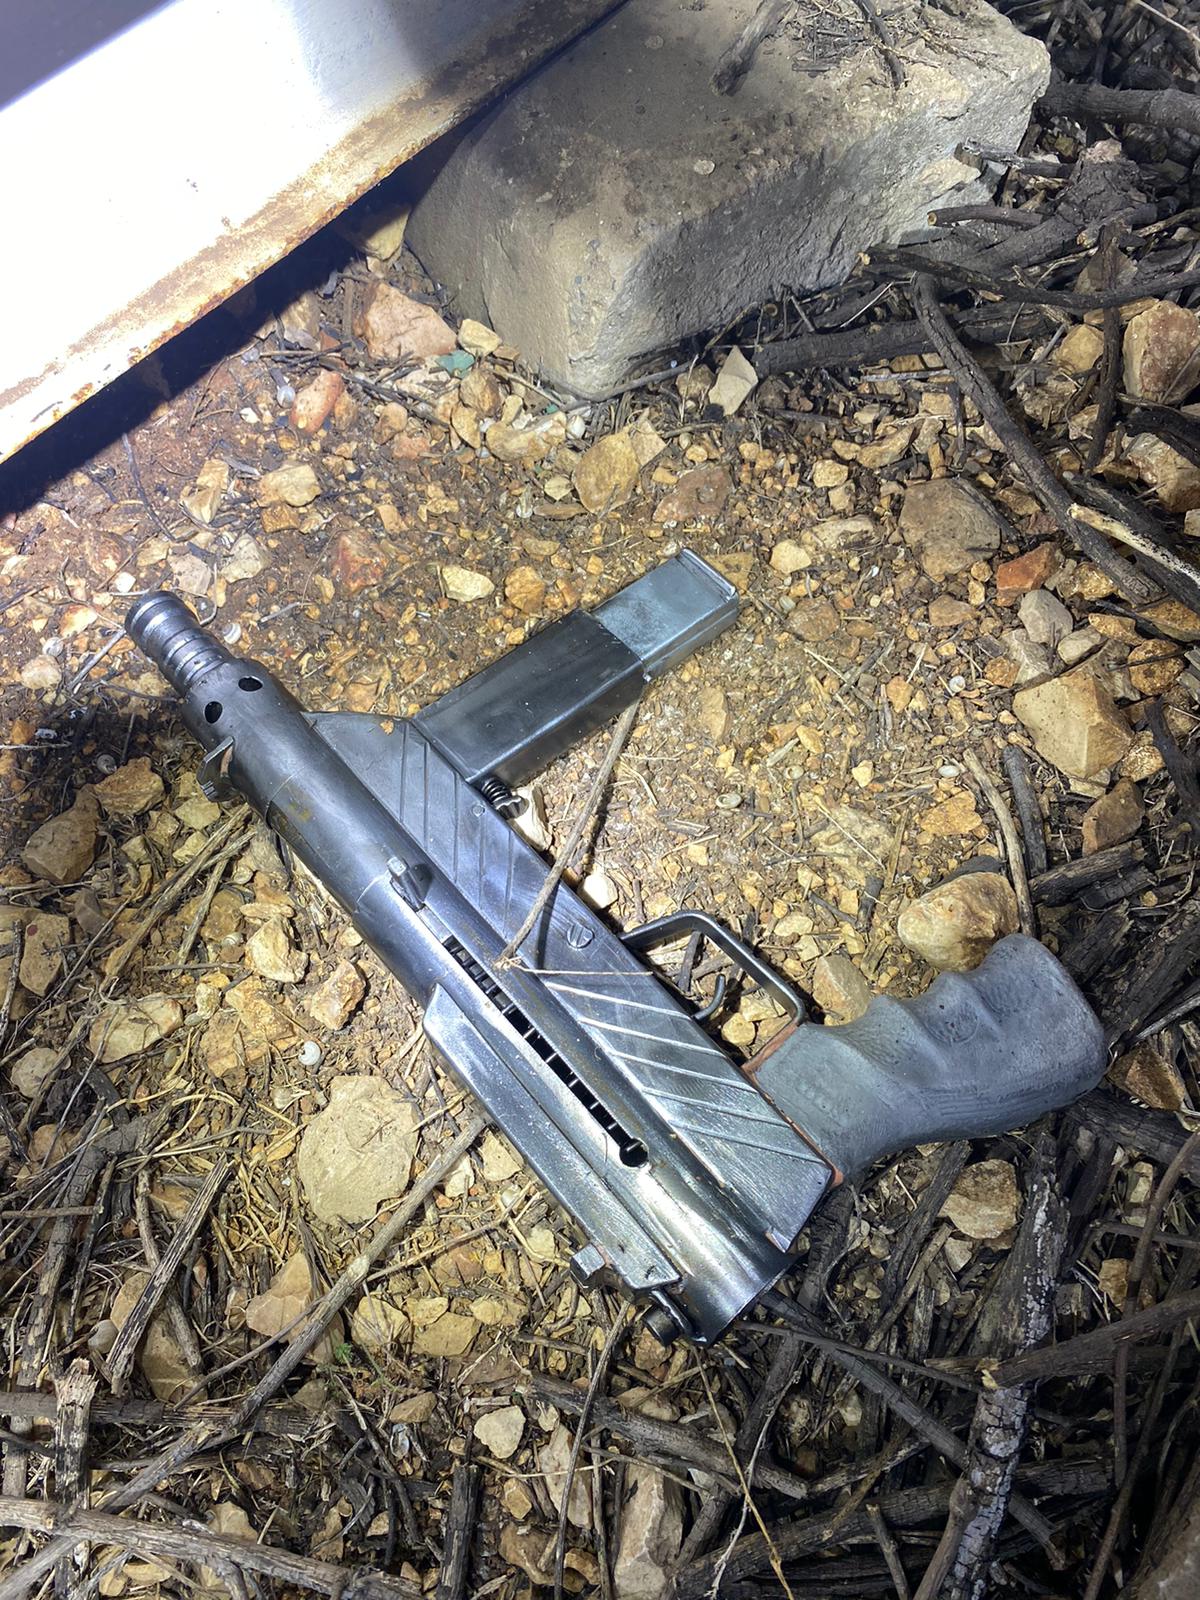 במהלך חיפוש בשטח פתוח בטובא נתפס נשק מסוג קרלו עם מחסנית בהכנס החשוד נעצר ונחקר